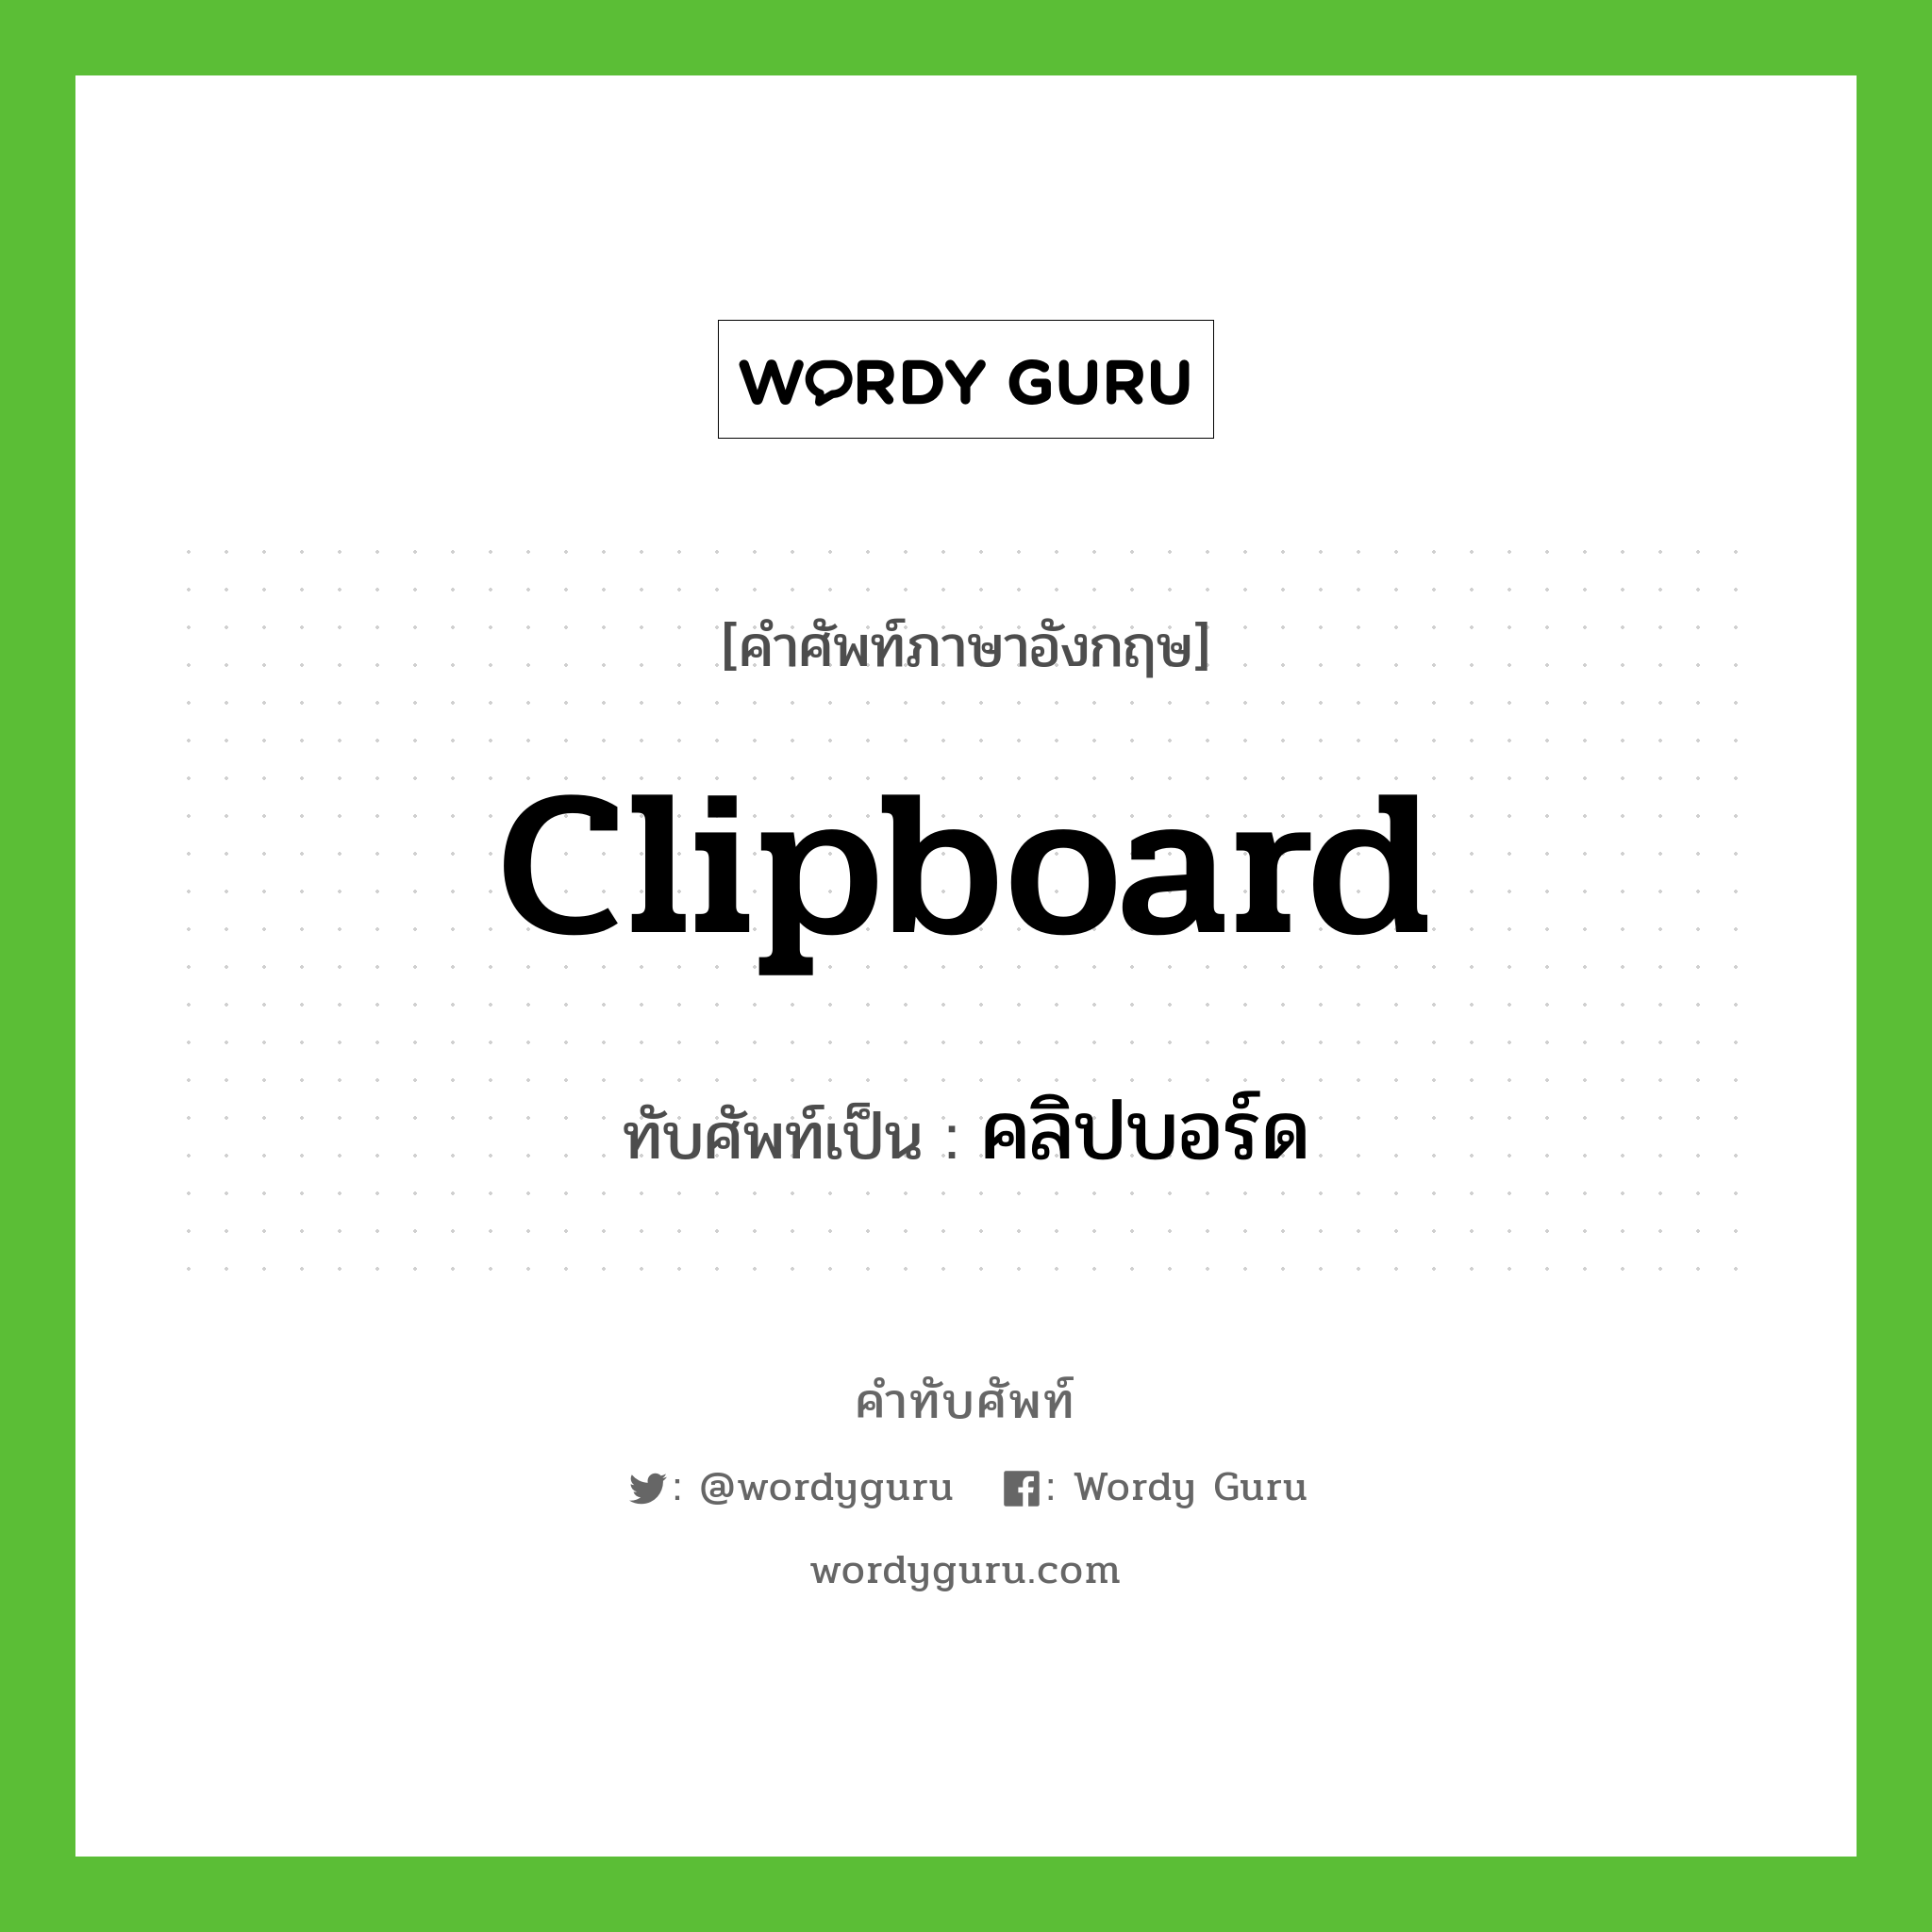 คลิปบอร์ด เขียนอย่างไร?, คำศัพท์ภาษาอังกฤษ คลิปบอร์ด ทับศัพท์เป็น clipboard